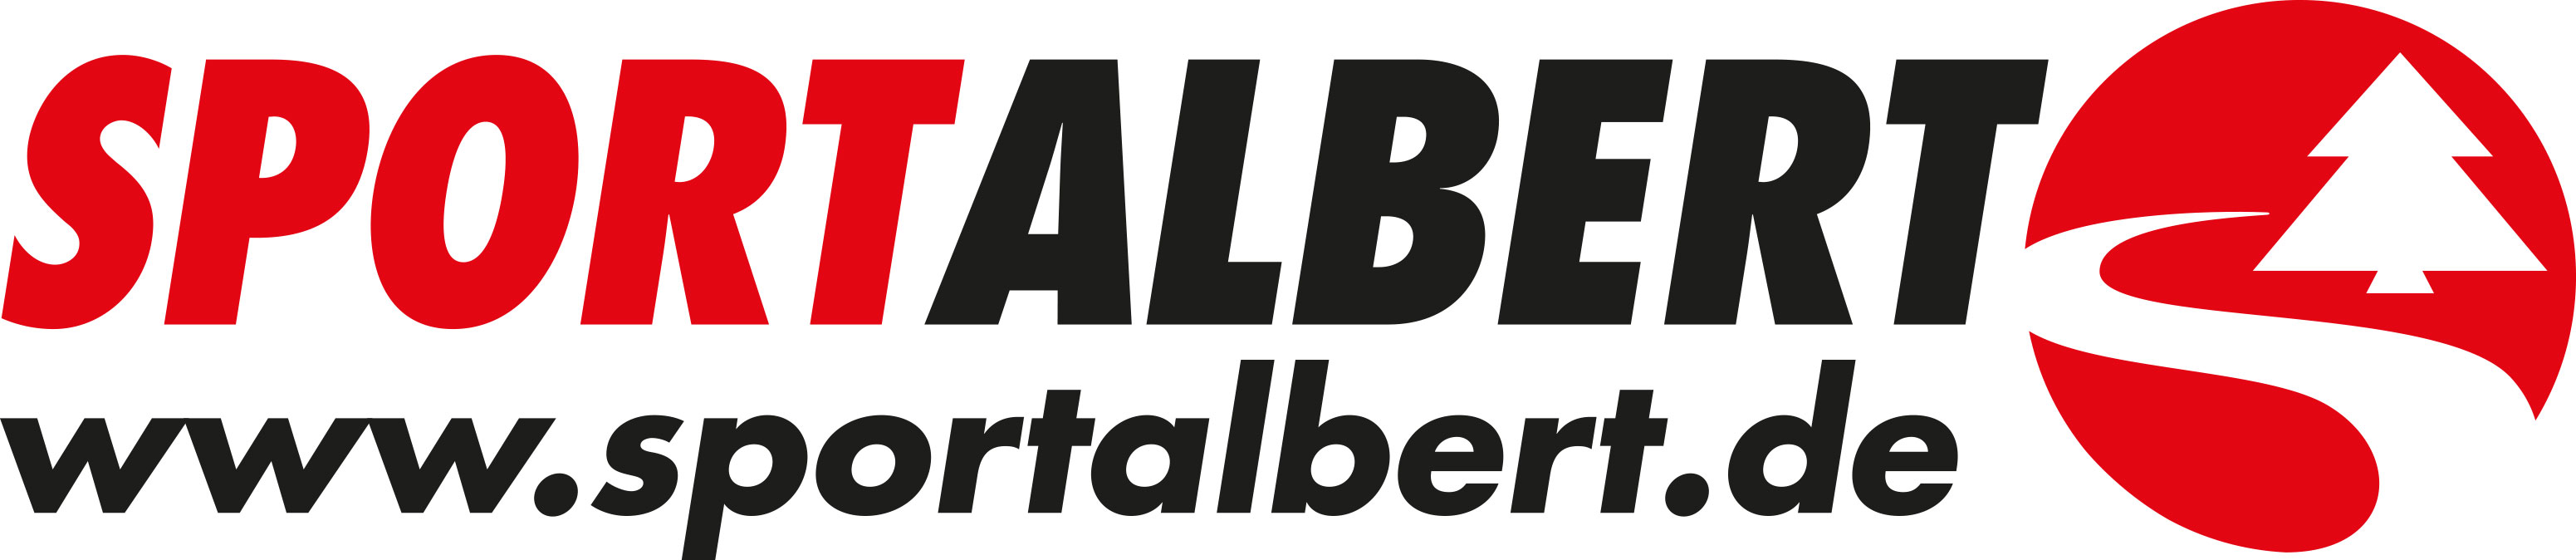 Sportalbert Baum www starkeschrift Logo